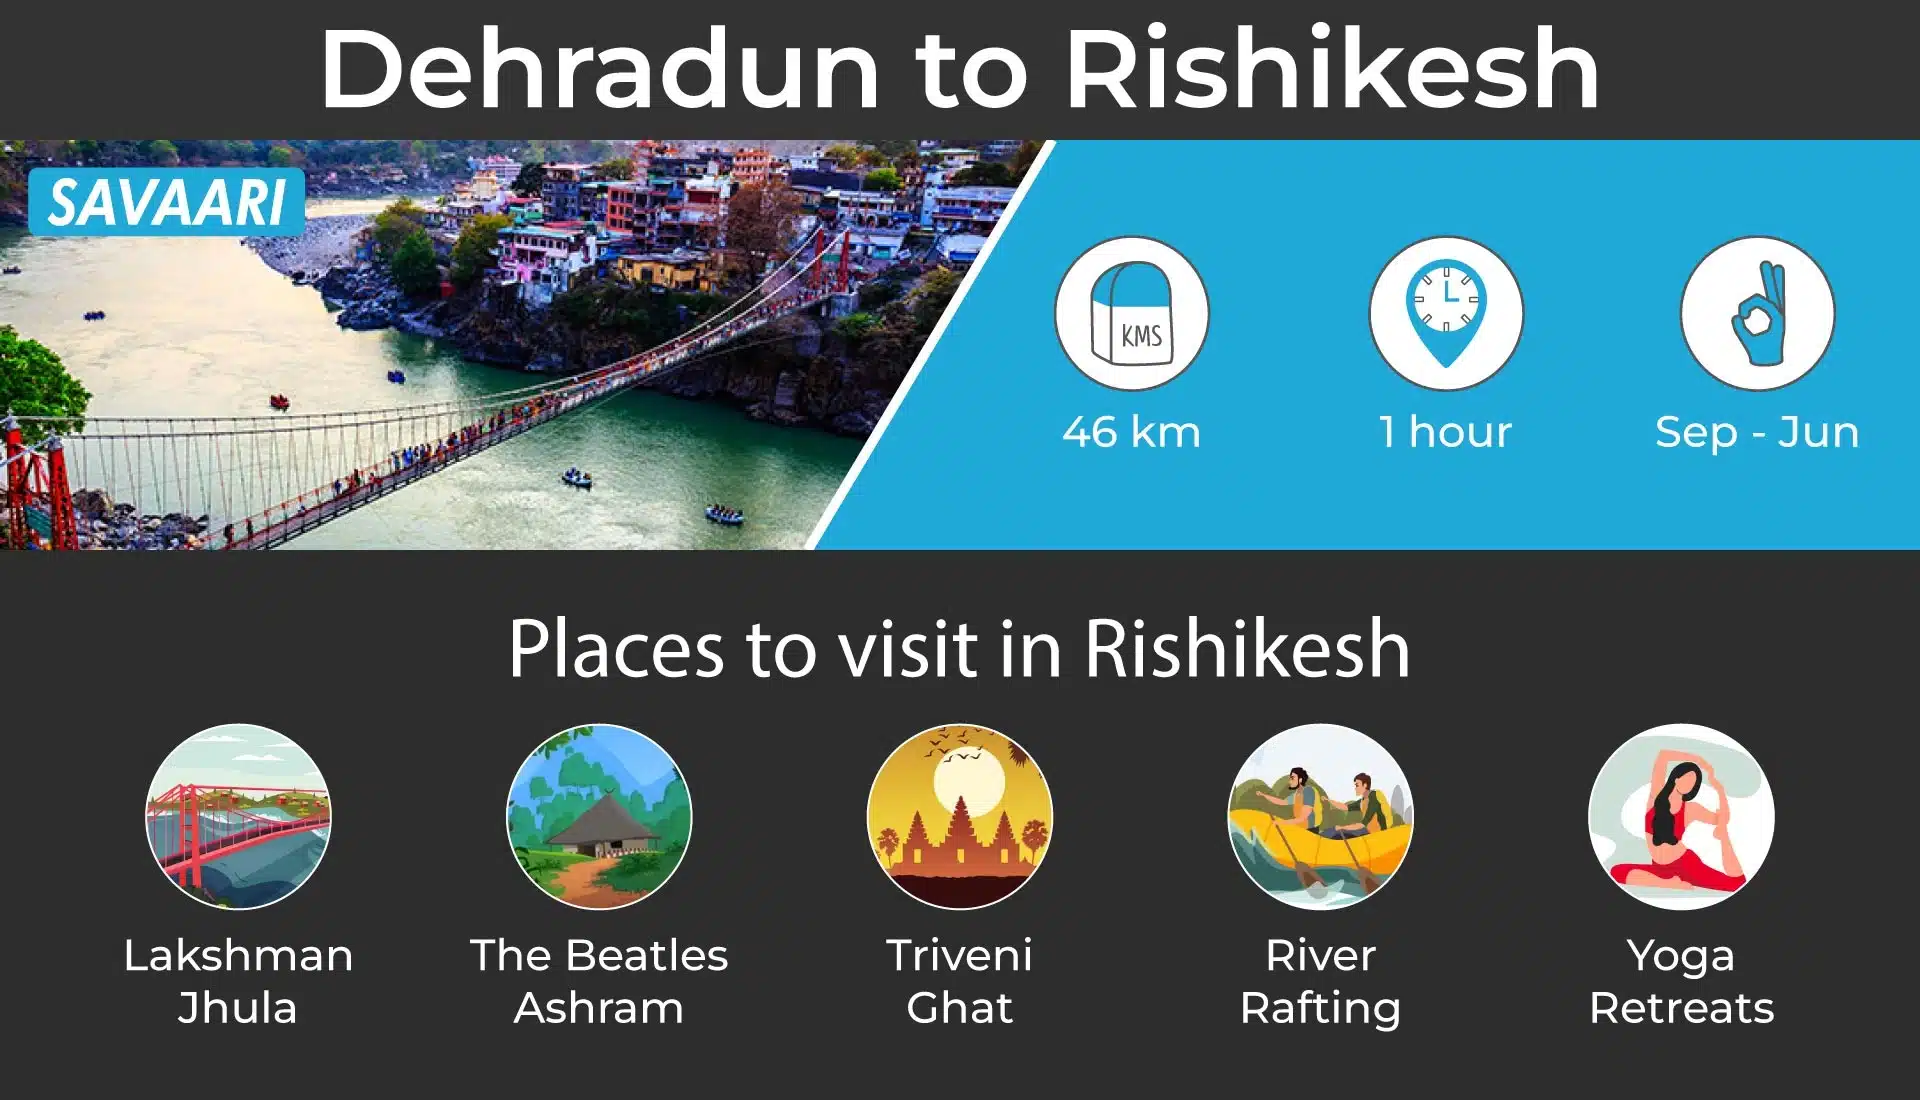 Dehradun to Rishikesh